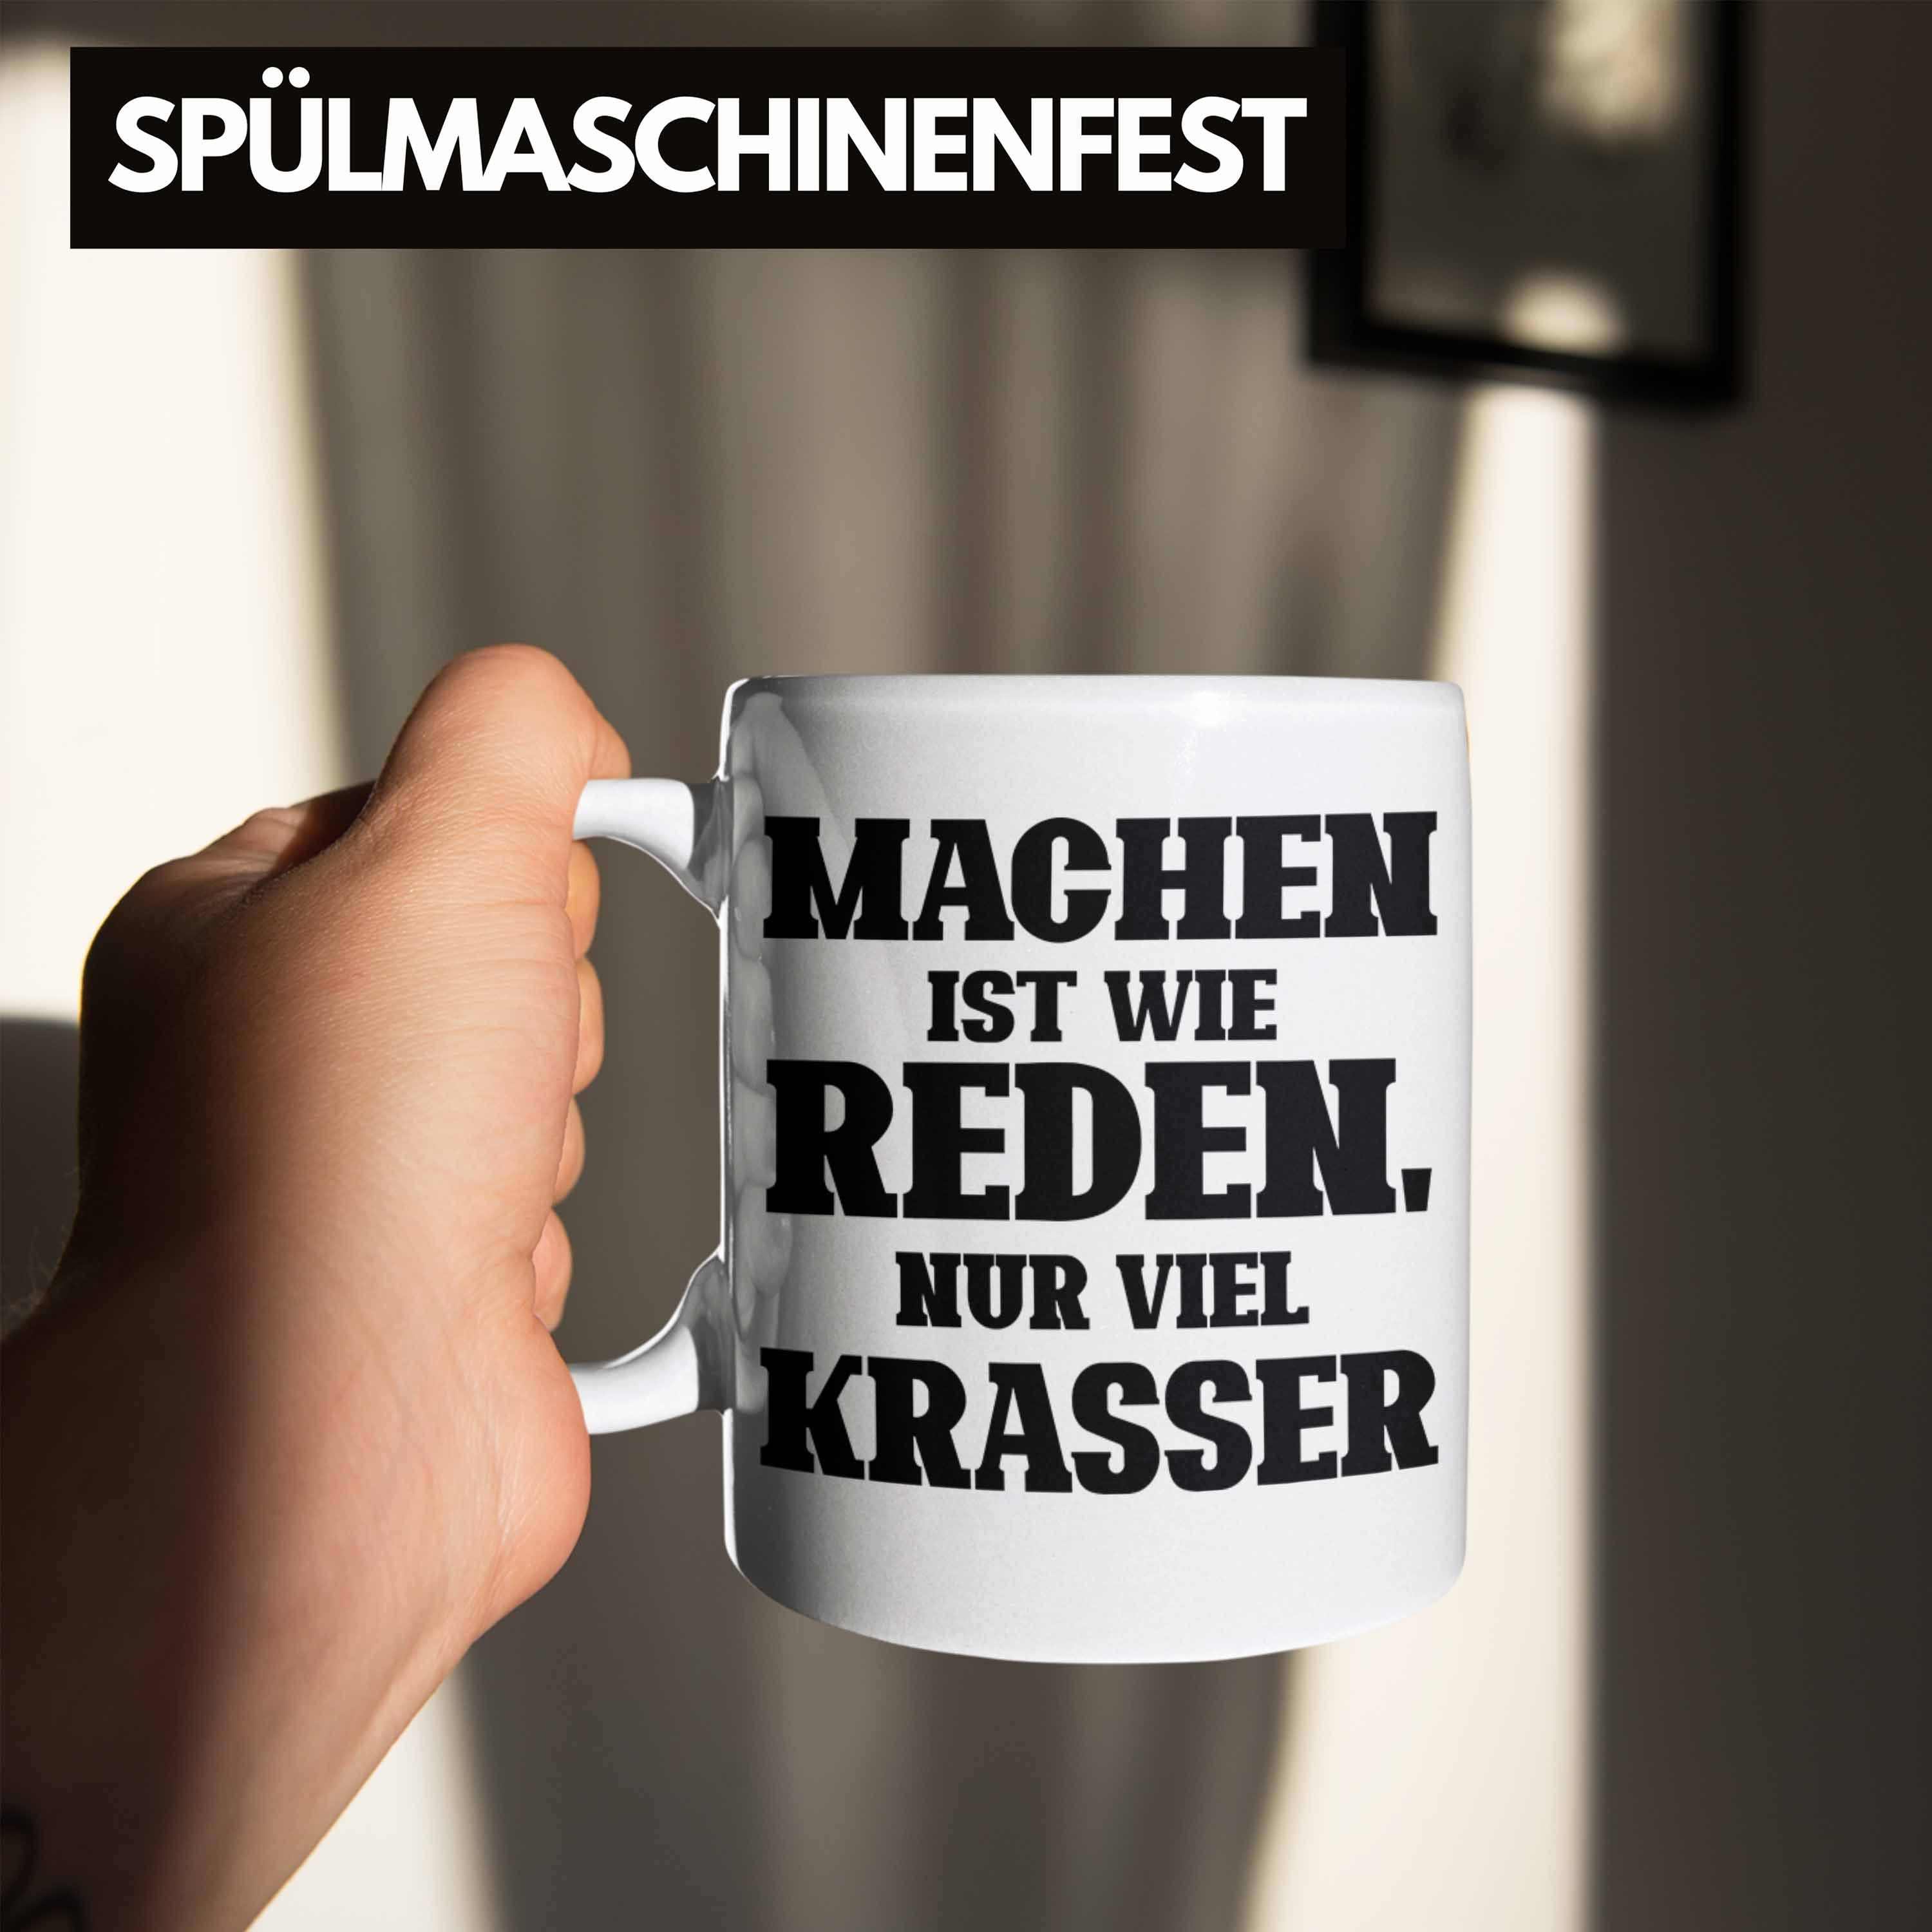 Trendation Tasse Lustige "Machen für Wie Geschenk Mac Tasse Weiss Ist Nur Krasser" Viel Reden